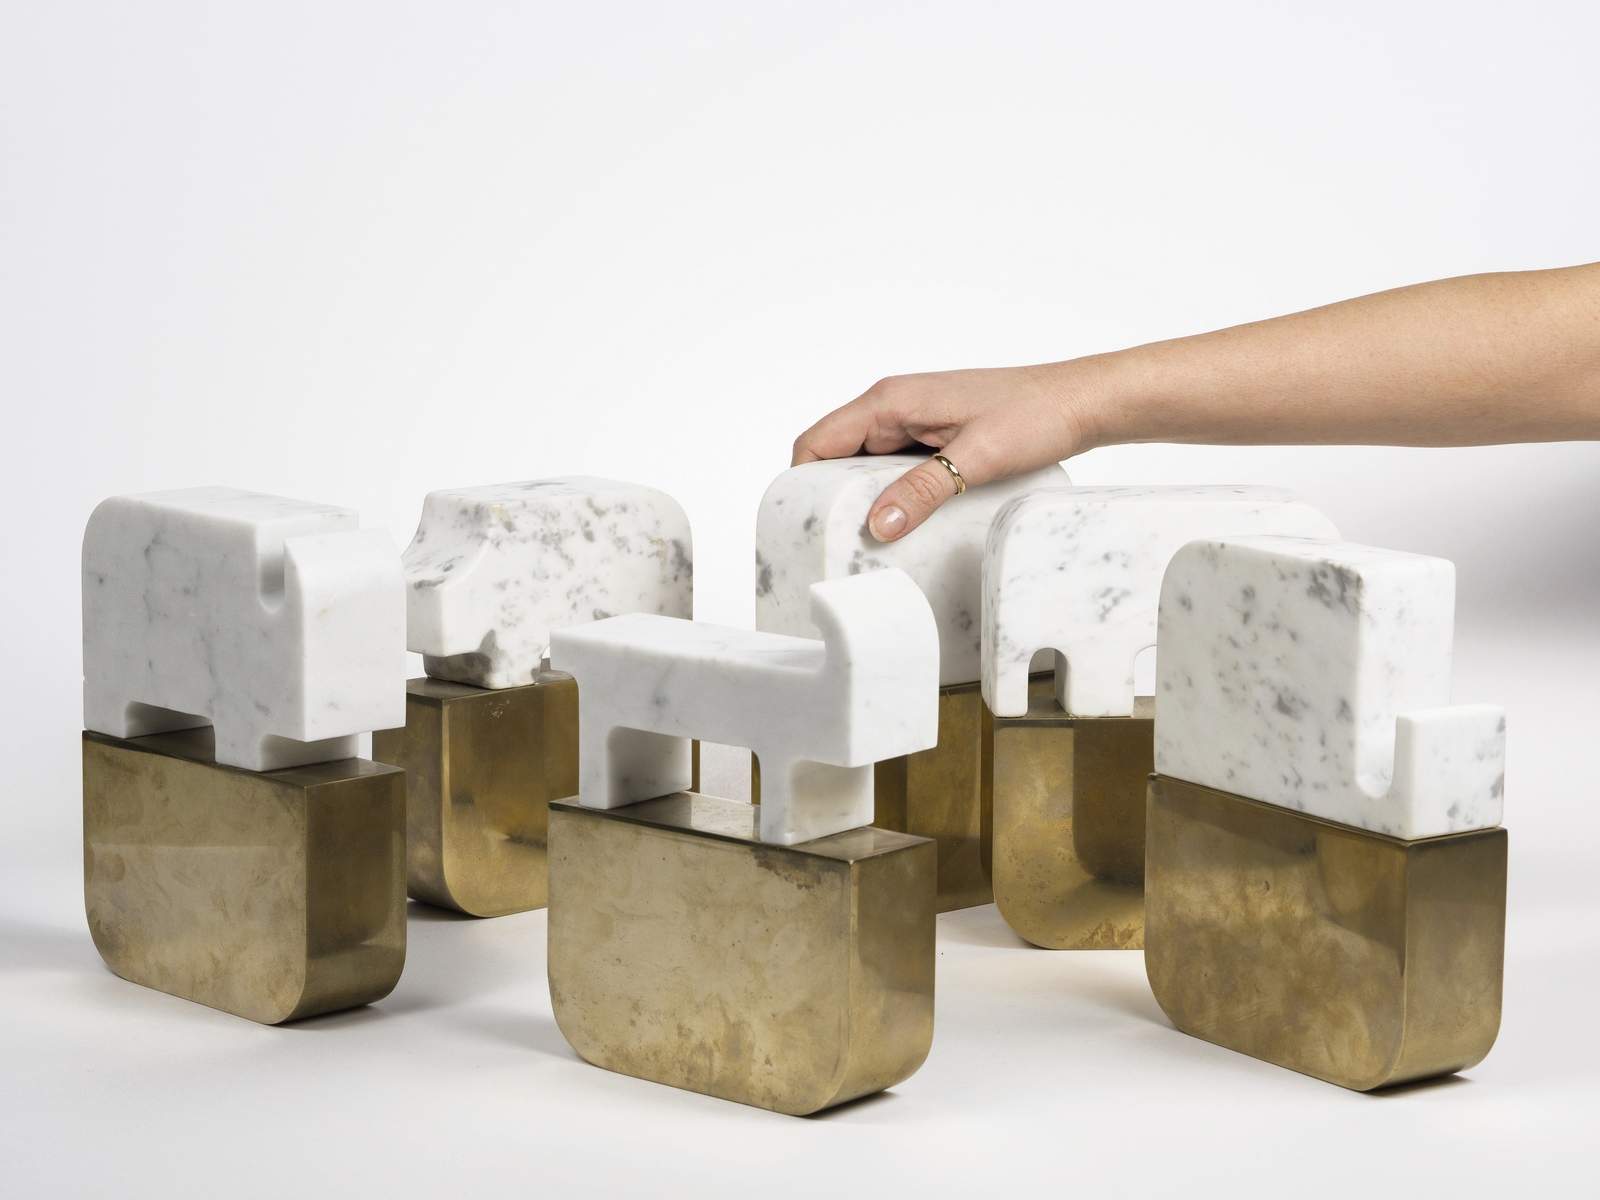 Una edición de Carrara Blanca enteramente dedicada al diseño: Design is Back en la ciudad del mármol